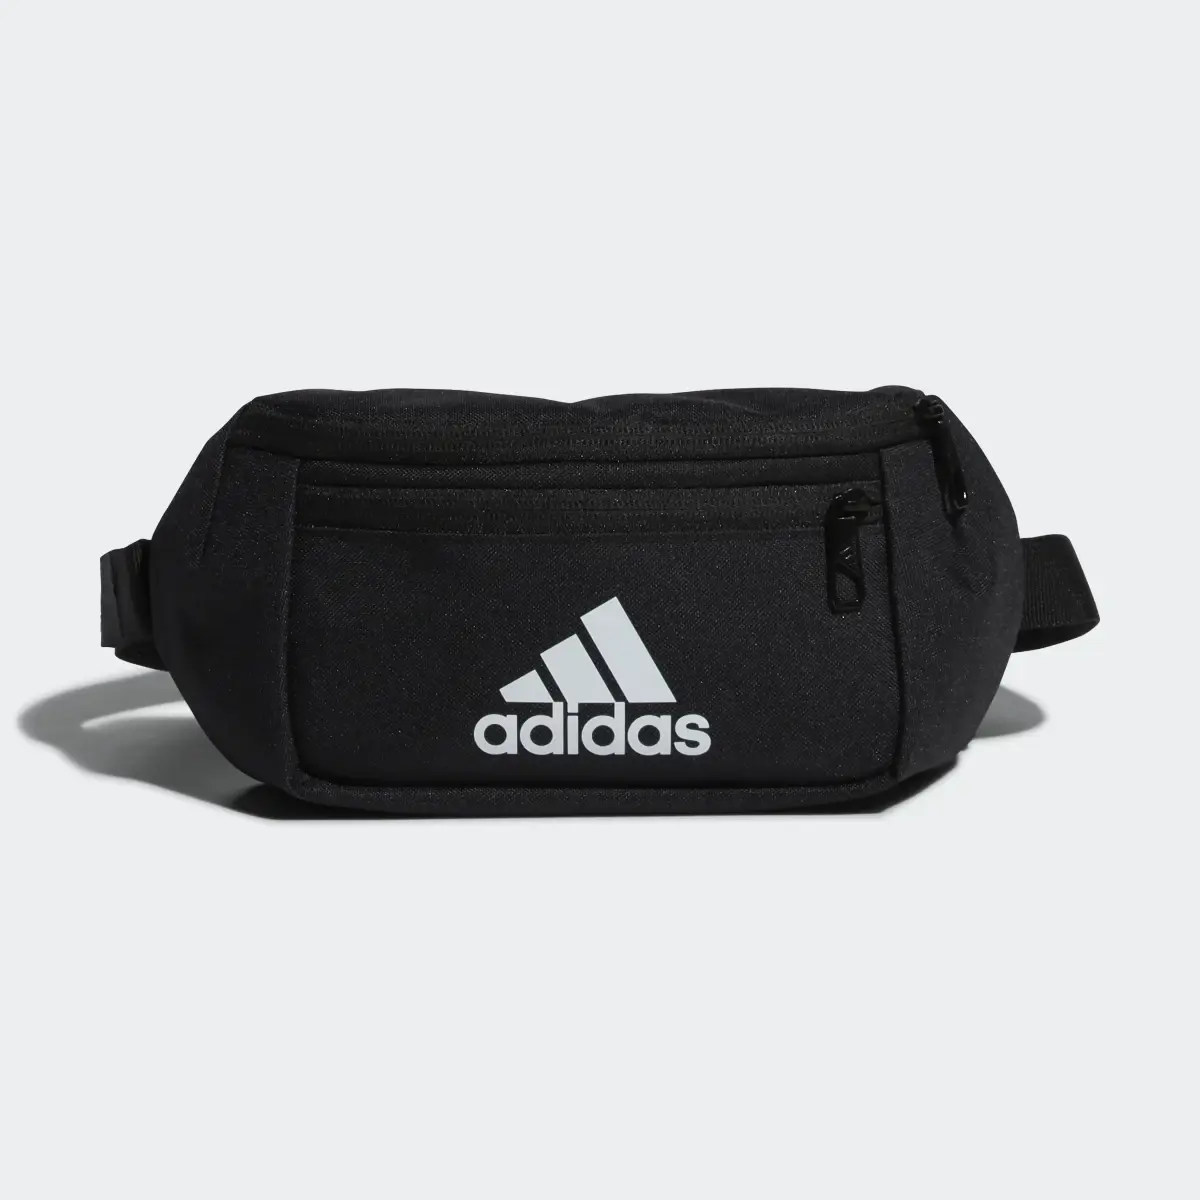 Adidas Classic Essential Waist Bag. 2